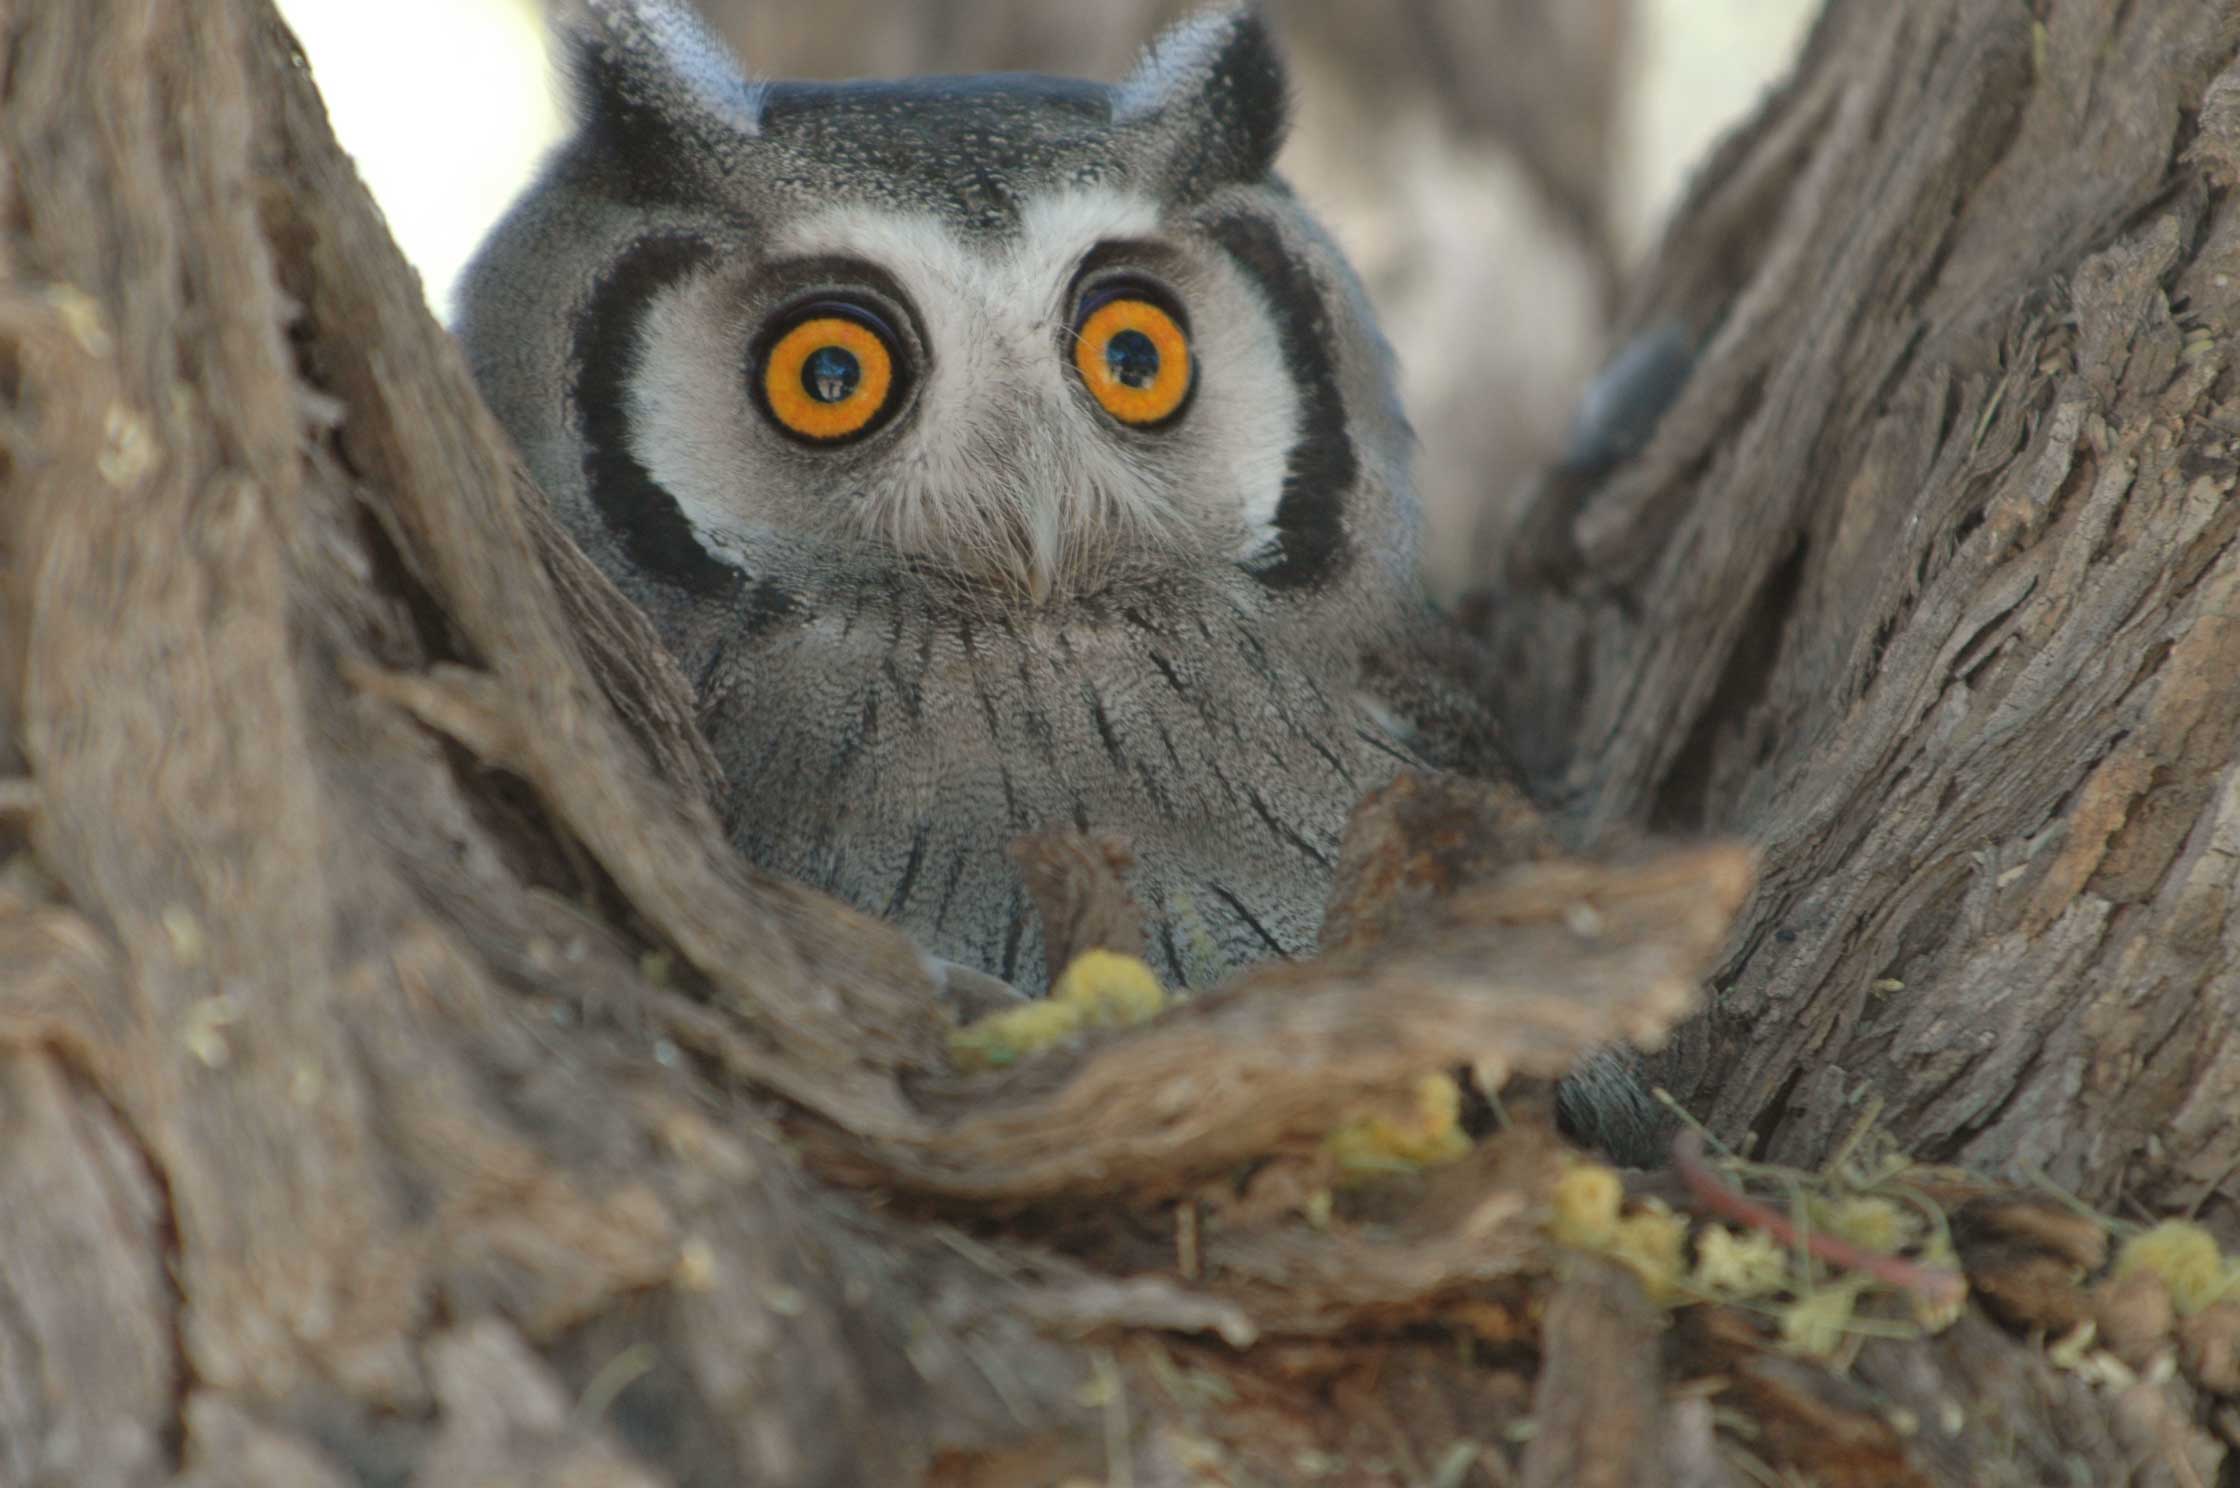 White Faced Owl on nest in tree